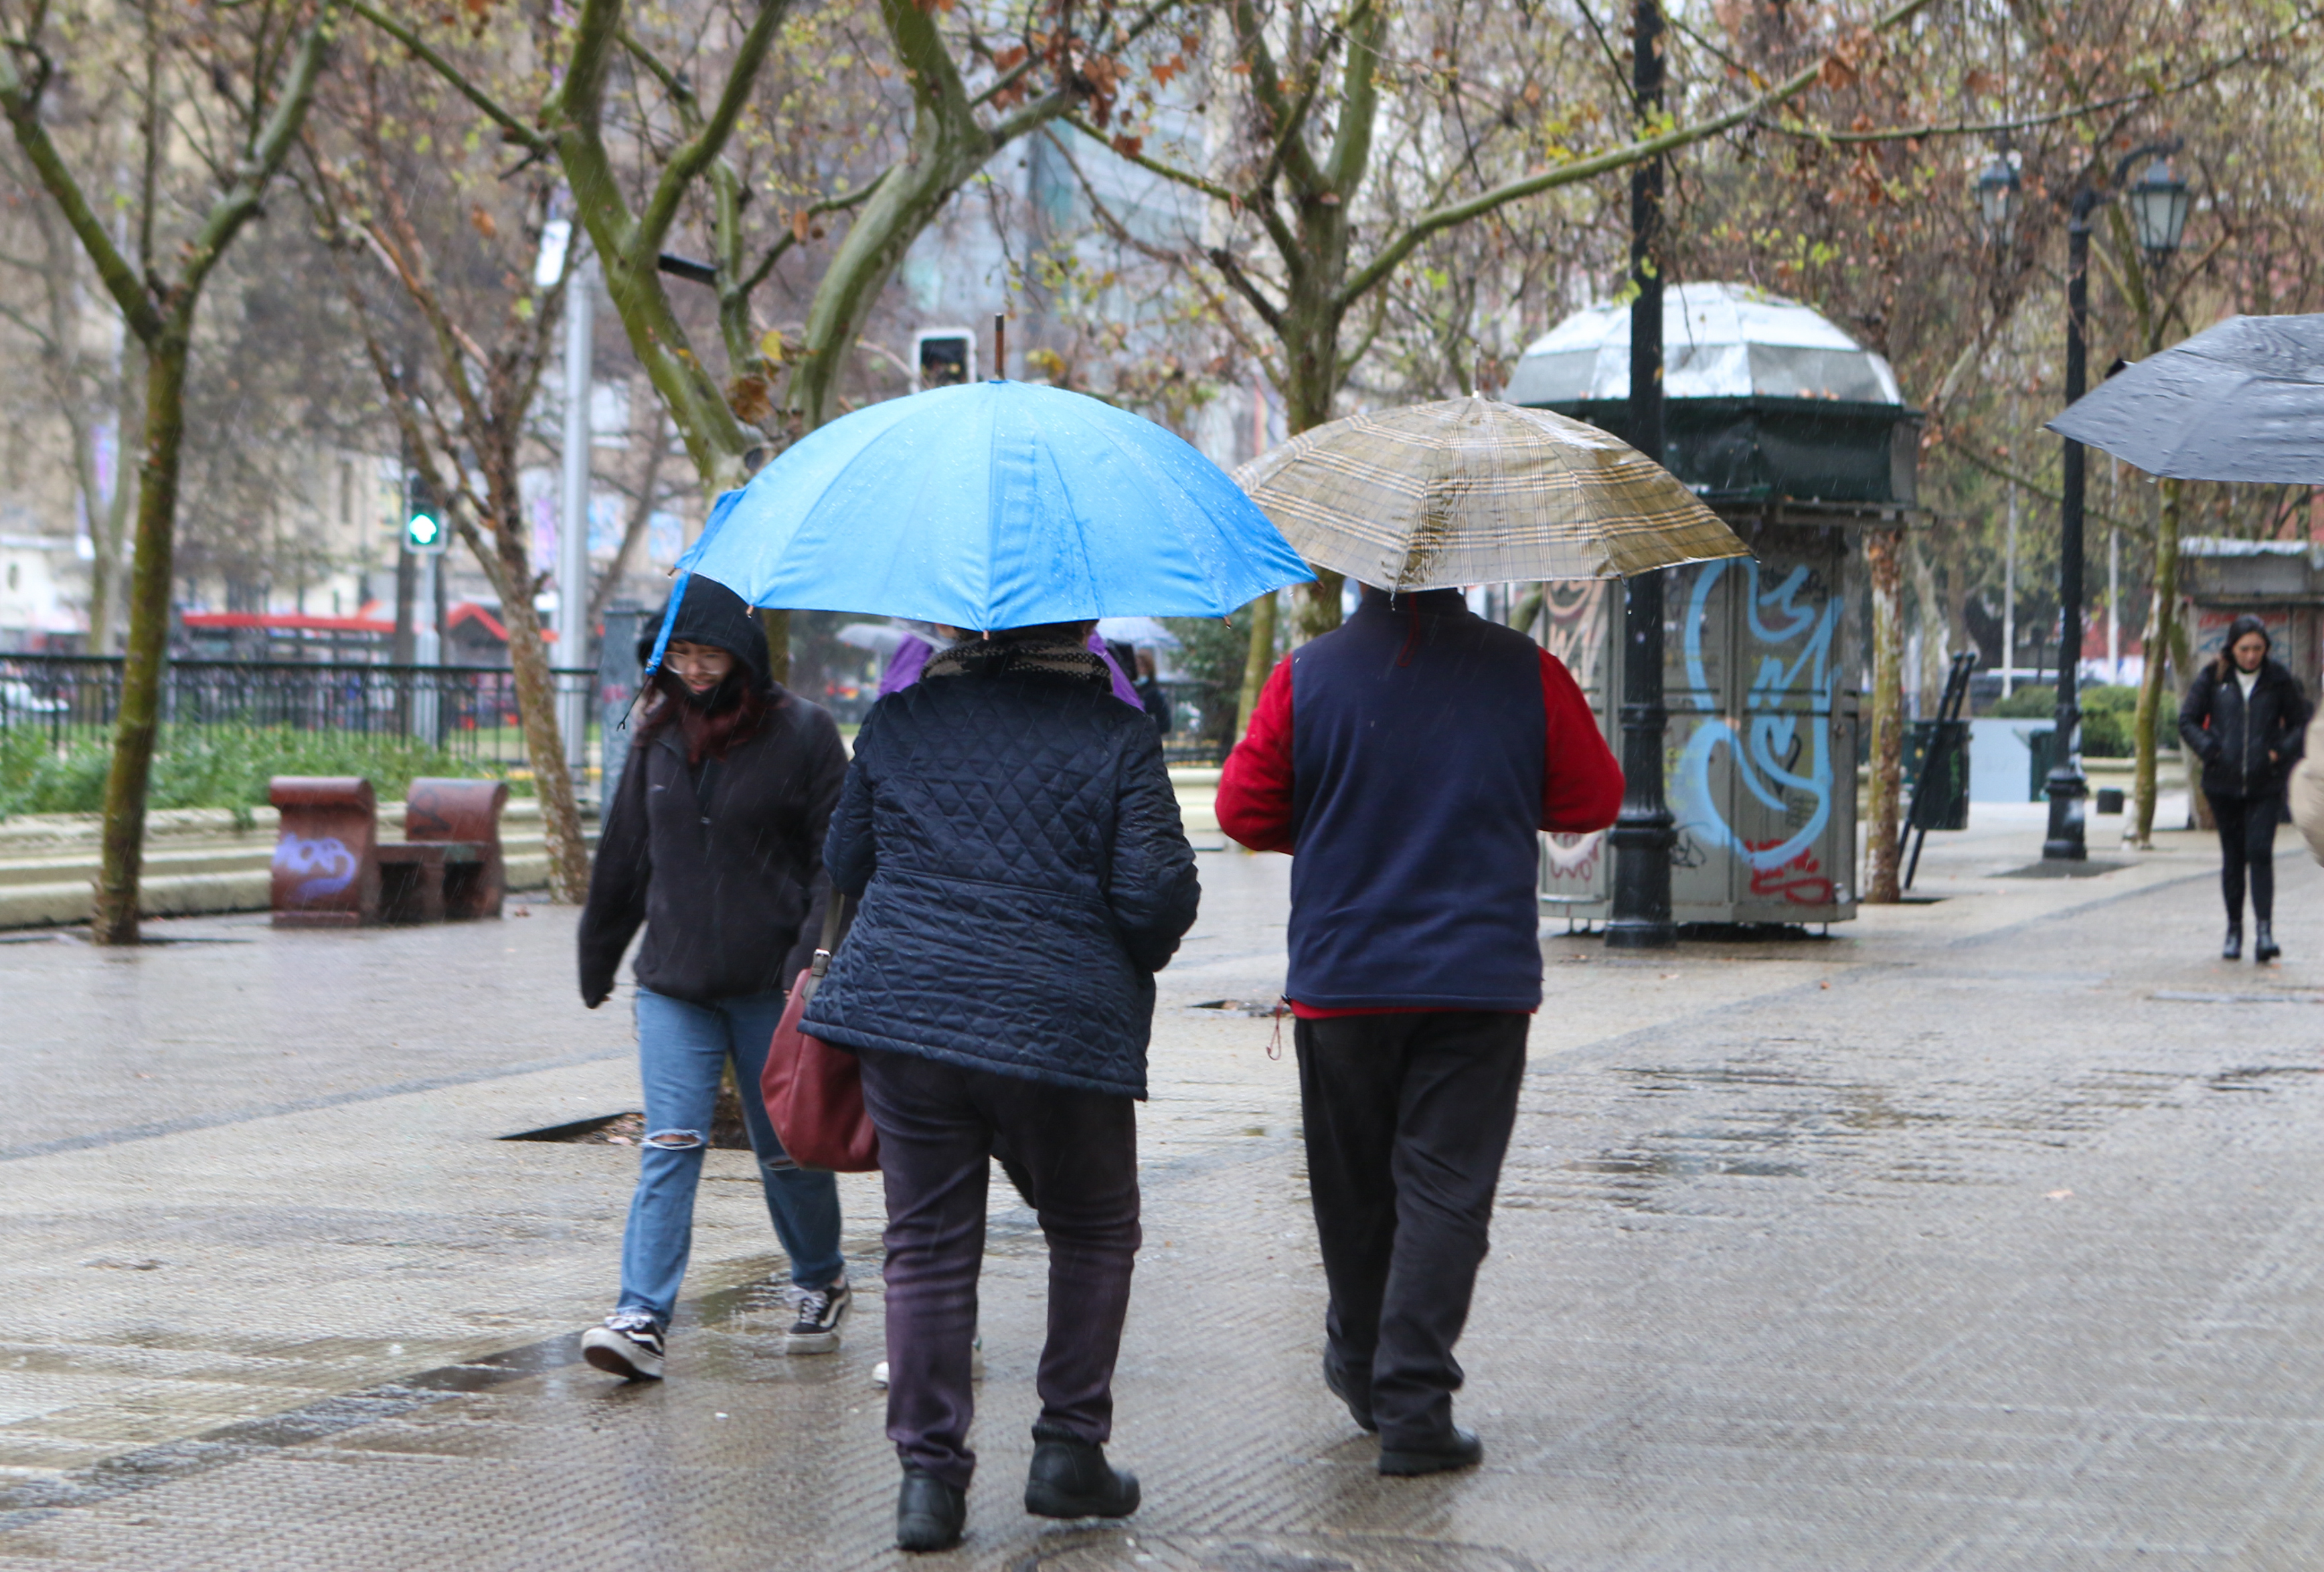 Personas caminando con paragua bajo la lluvia.